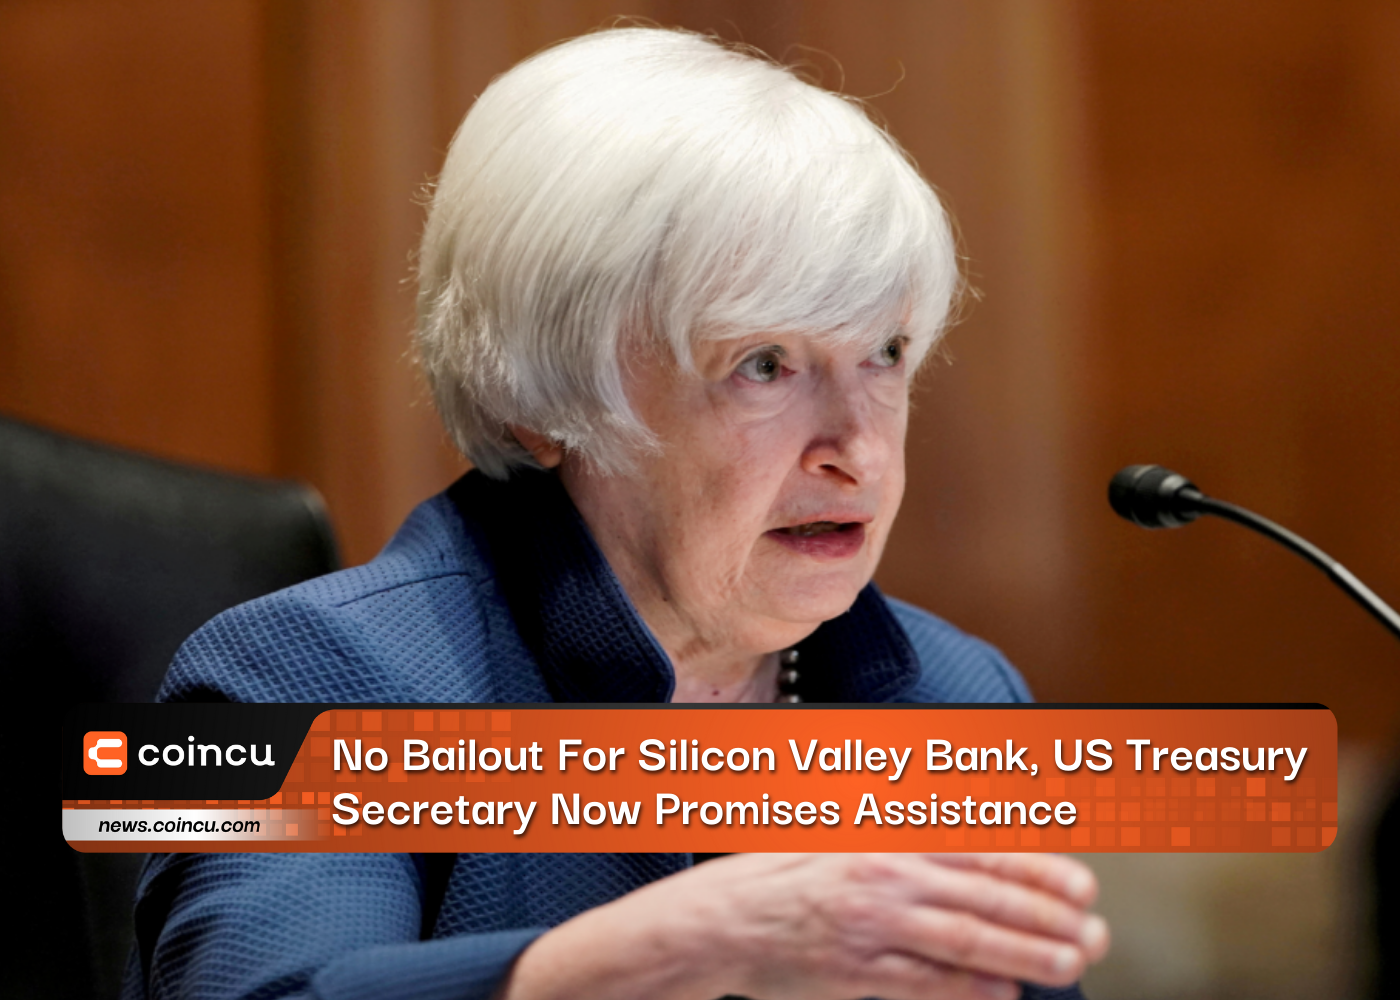 No hay rescate para el banco de Silicon Valley, el secretario del Tesoro de EE.UU. ahora promete ayuda